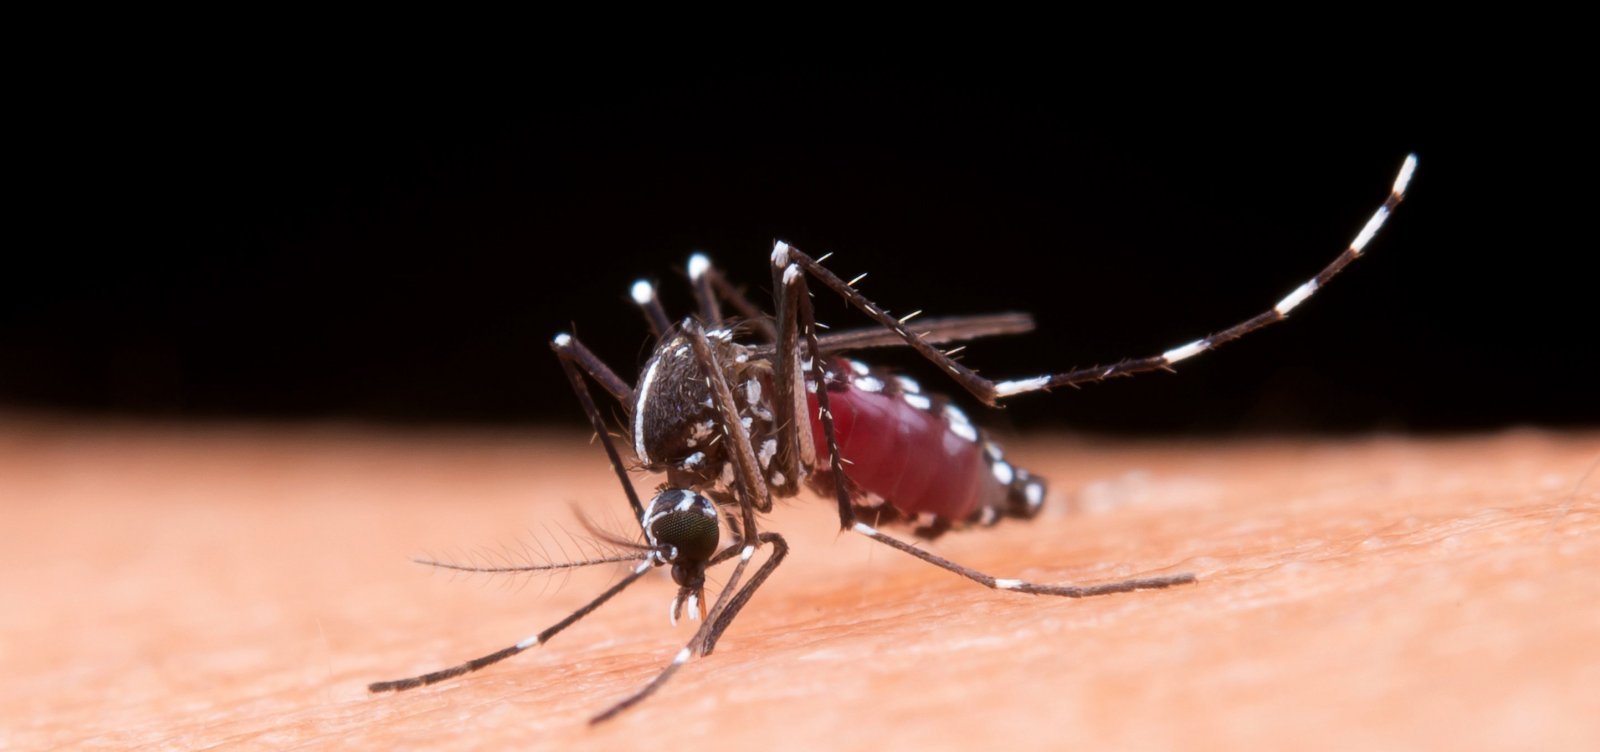  Brasil bate recorde histórico com 1.116 mortes por dengue